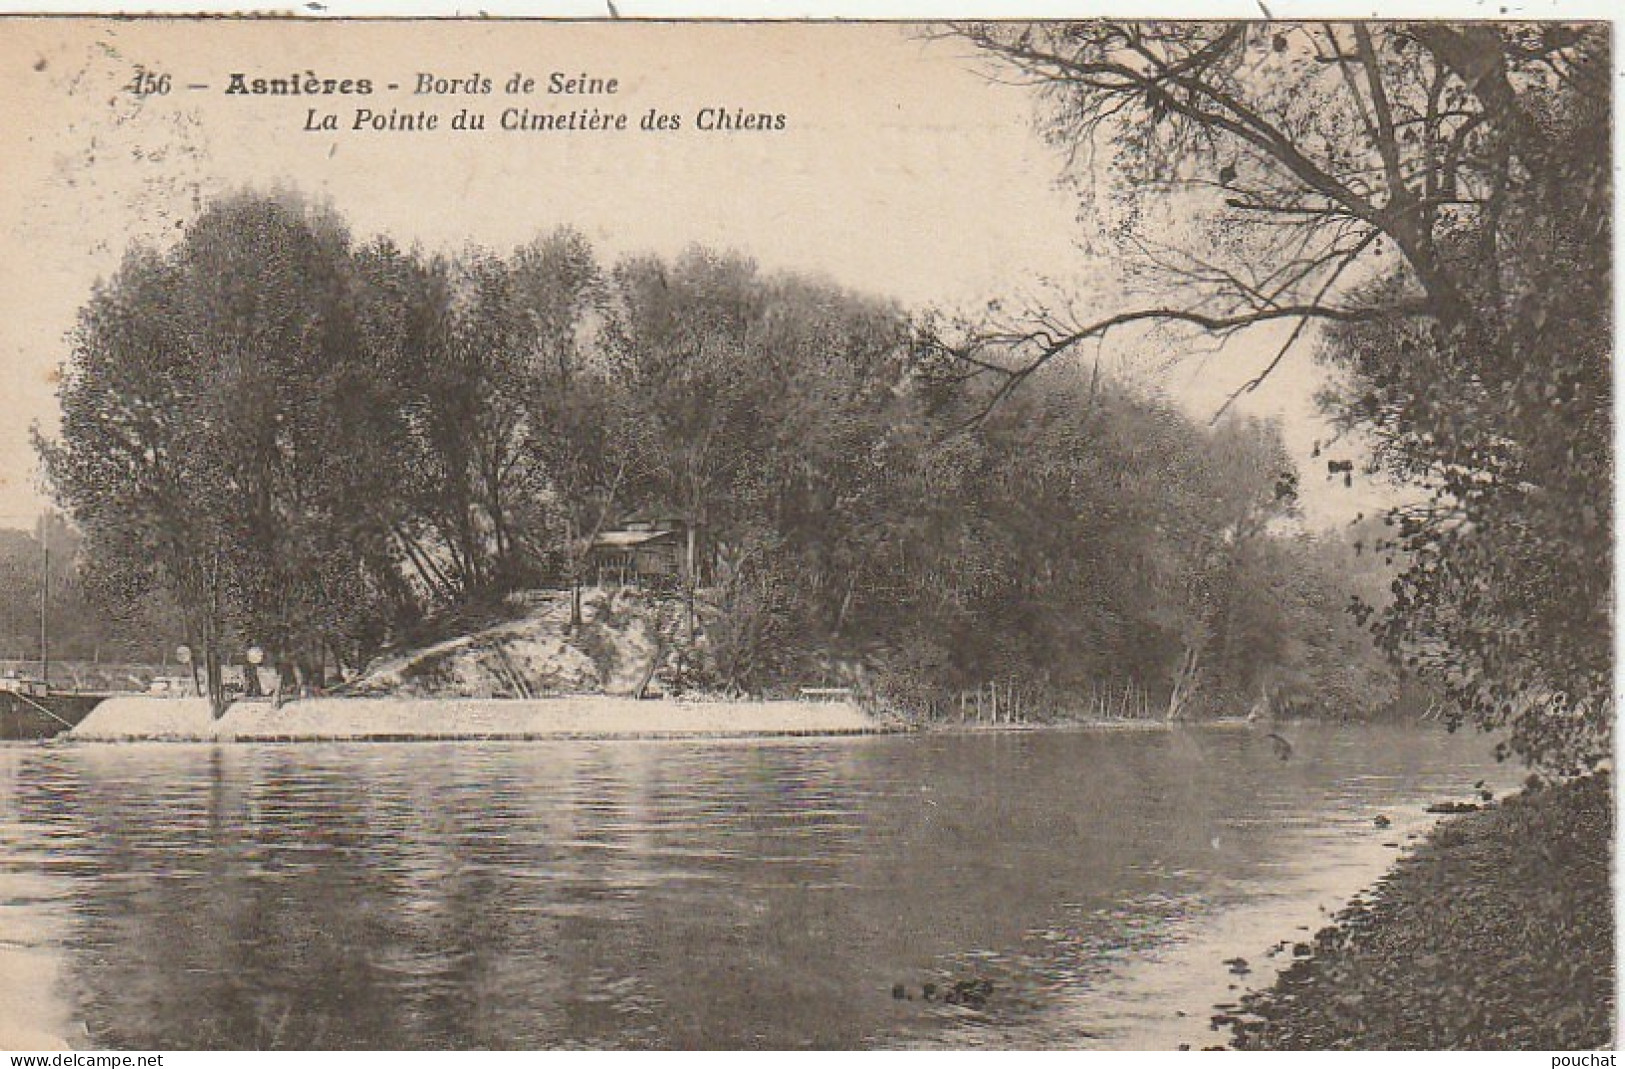 MO 4-(92) ASNIERES - BORDS DE SEINE - LA POINTE DU CIMETIERE DES CHIENS - 2 SCANS  - Asnieres Sur Seine